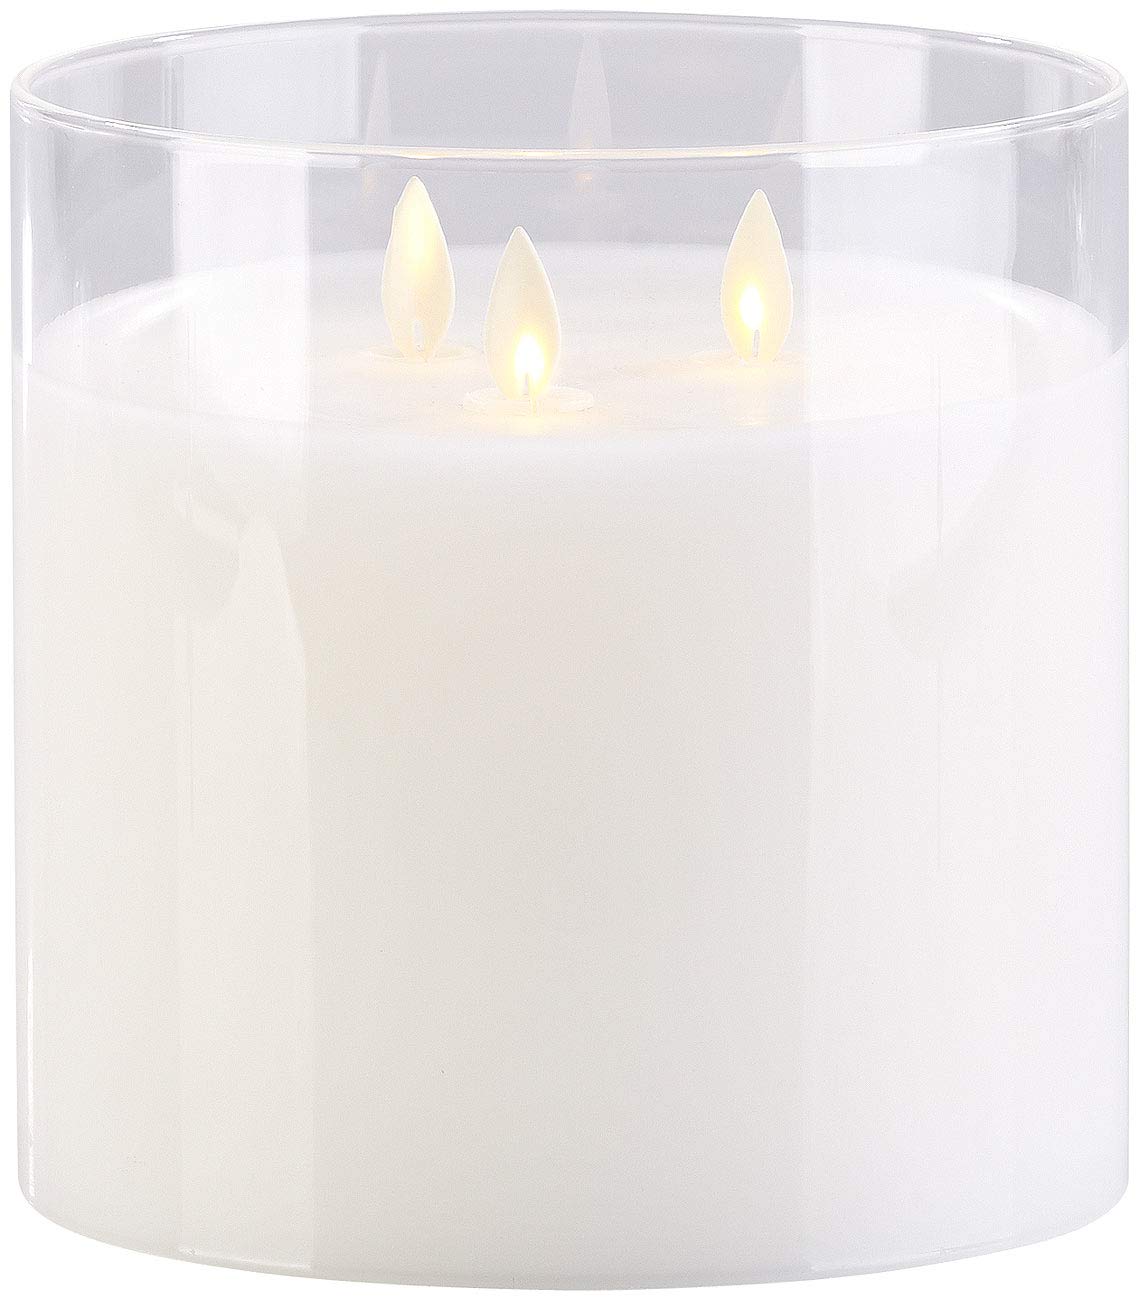 Britesta LED Kerze im Glas: LED-Echtwachs-Kerze im Windglas mit 3 beweglichen Flammen, weiß (LED Kerze im Glas groß, Echtwachskerze, Kerzen Fernbedienung)